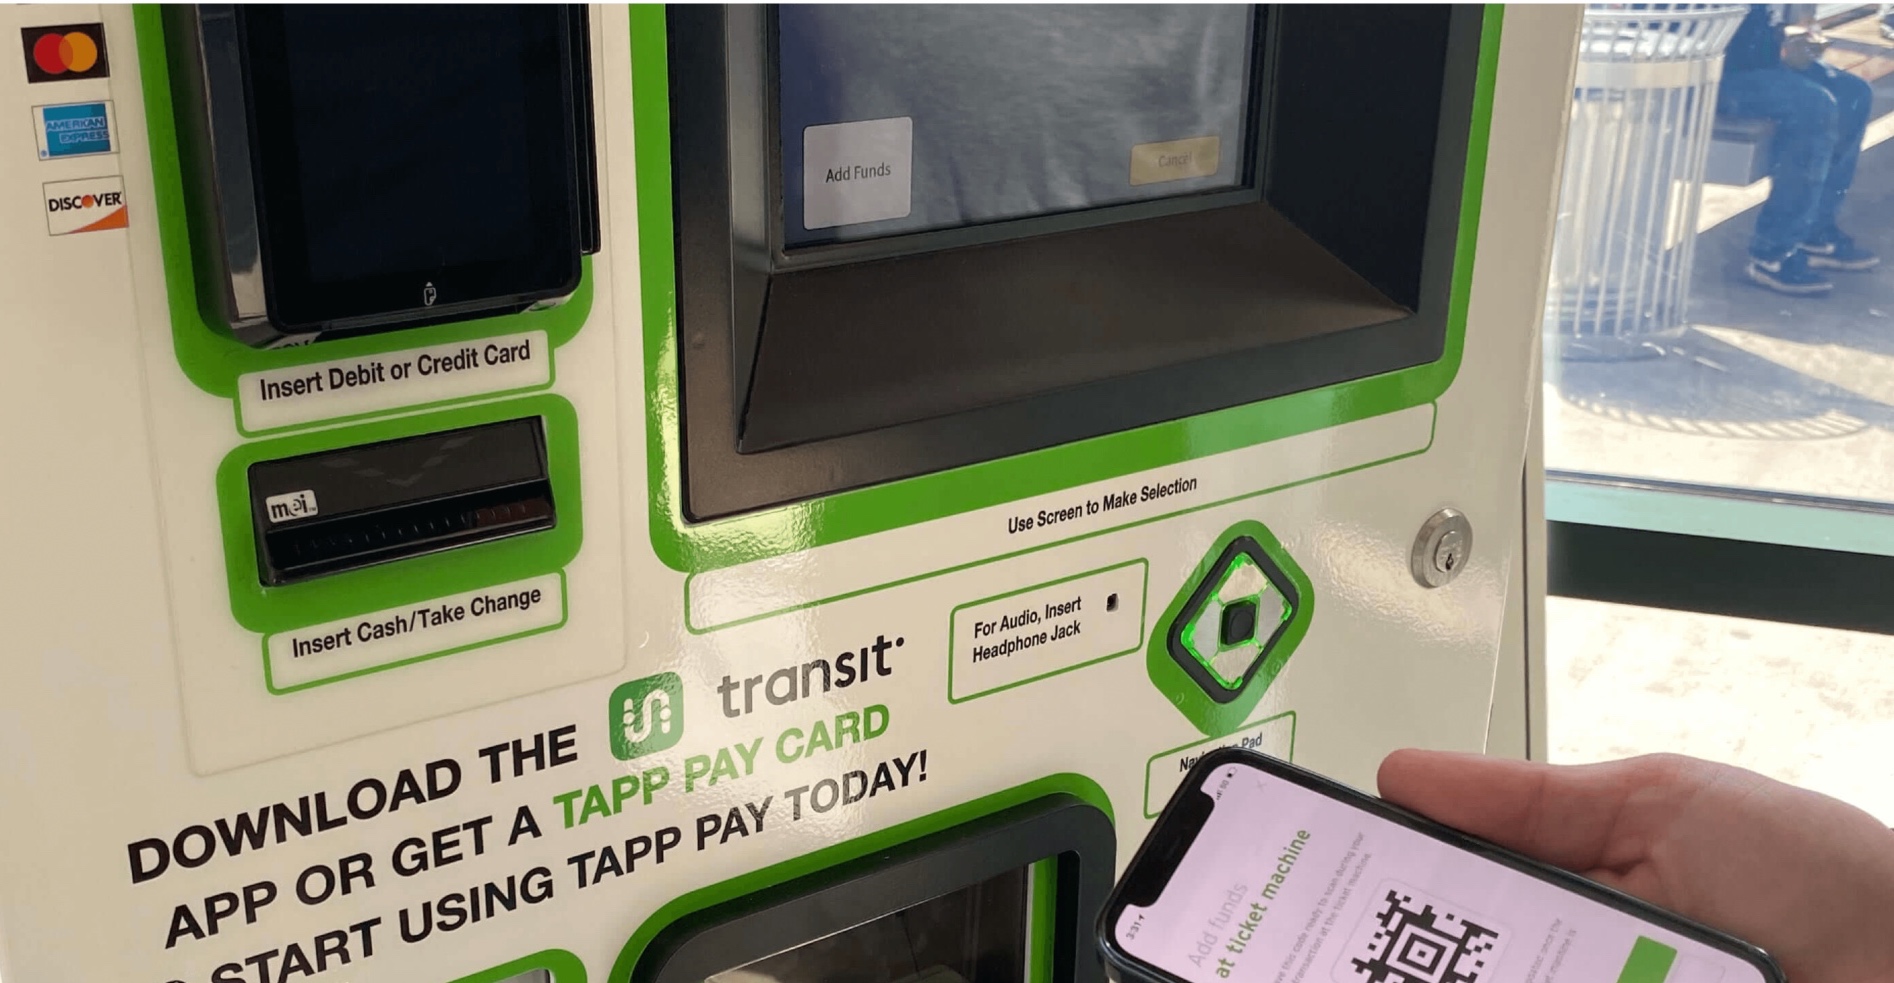 Using Transit app at vending machine in Dayton